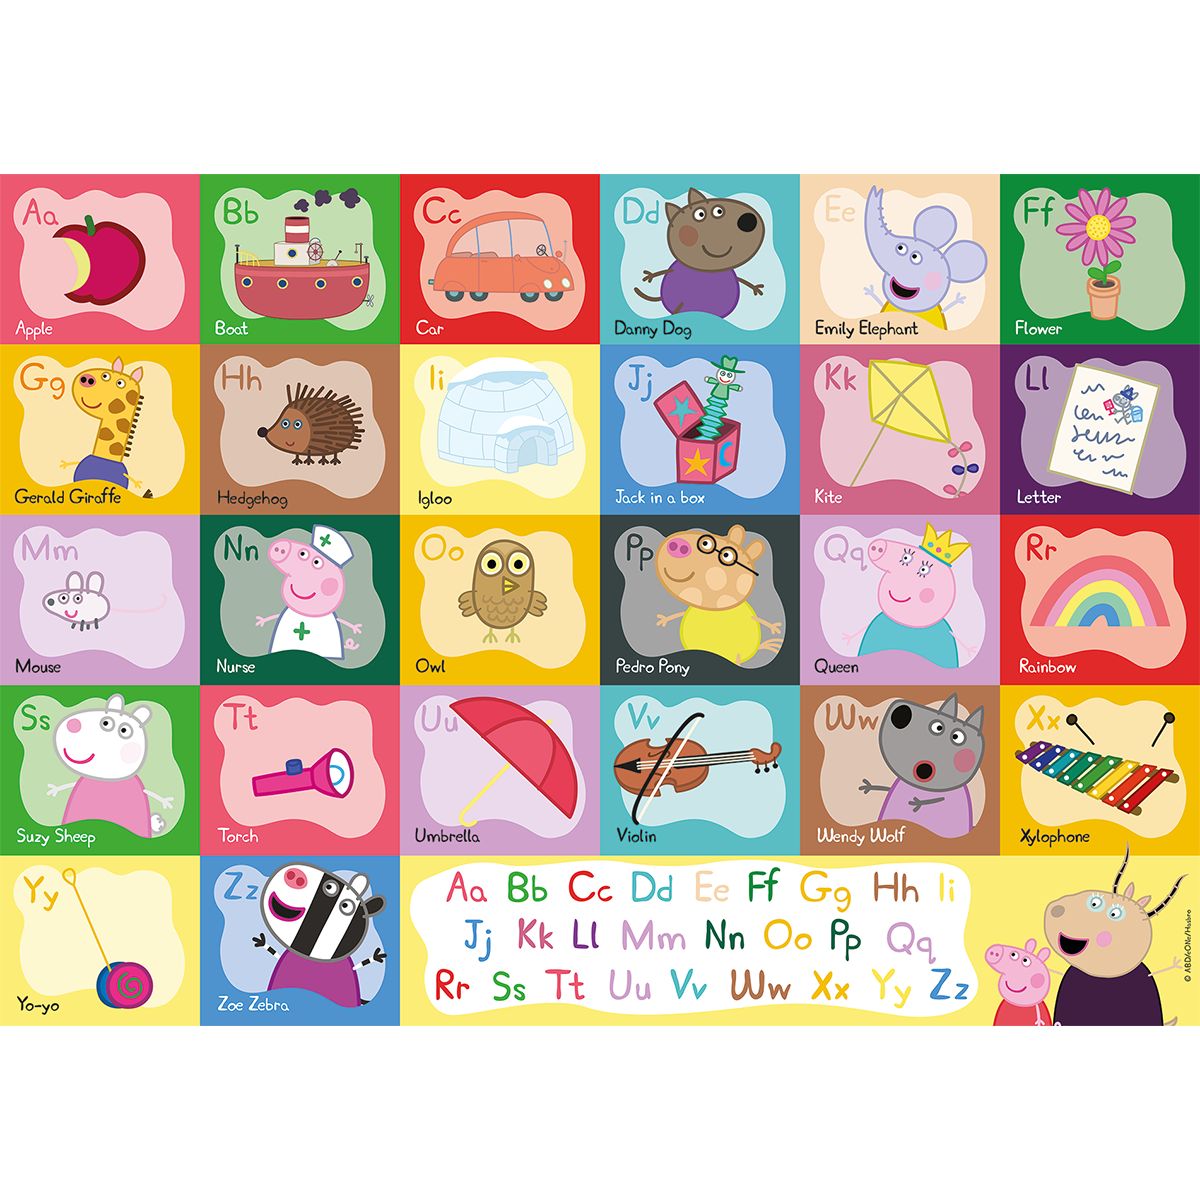 Ravensburger - puzzle 24 pezzi - formato giant – per bambini a partire dai 3 anni - alfabeto di peppa pig - 03116 - PEPPA PIG, RAVENSBURGER